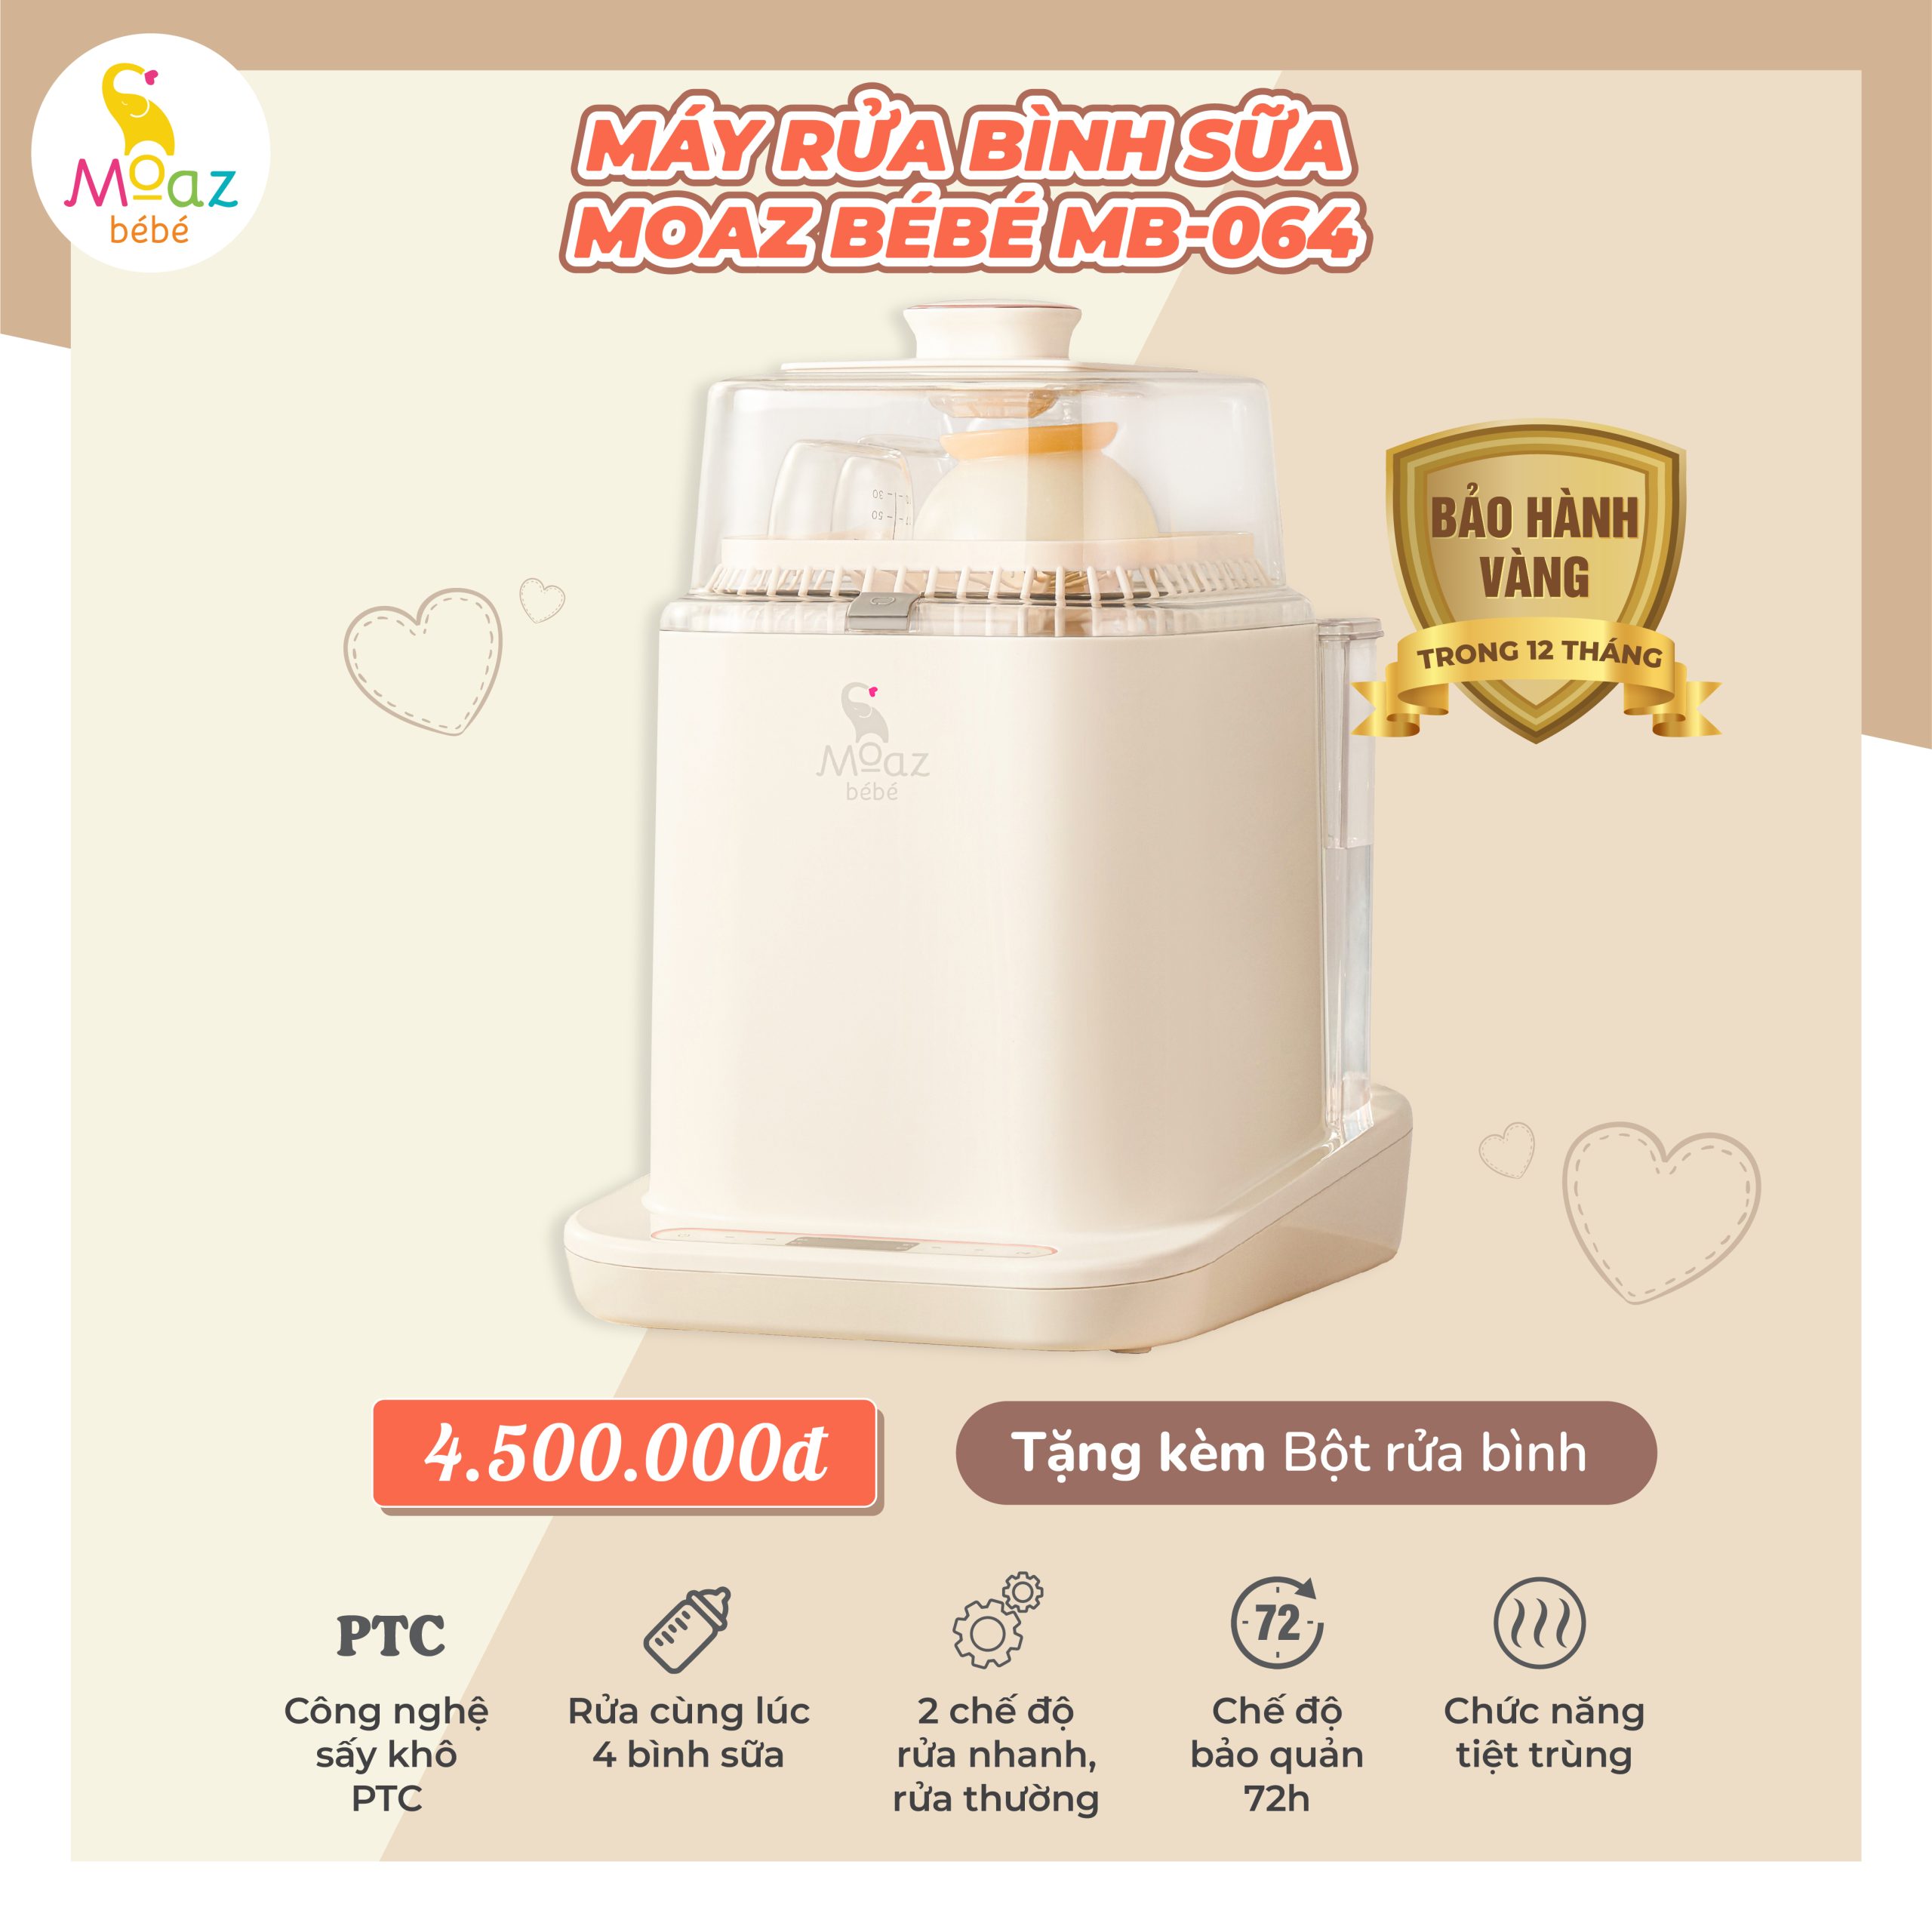 Ảnh máy rửa bình sữa Moaz Mb 064